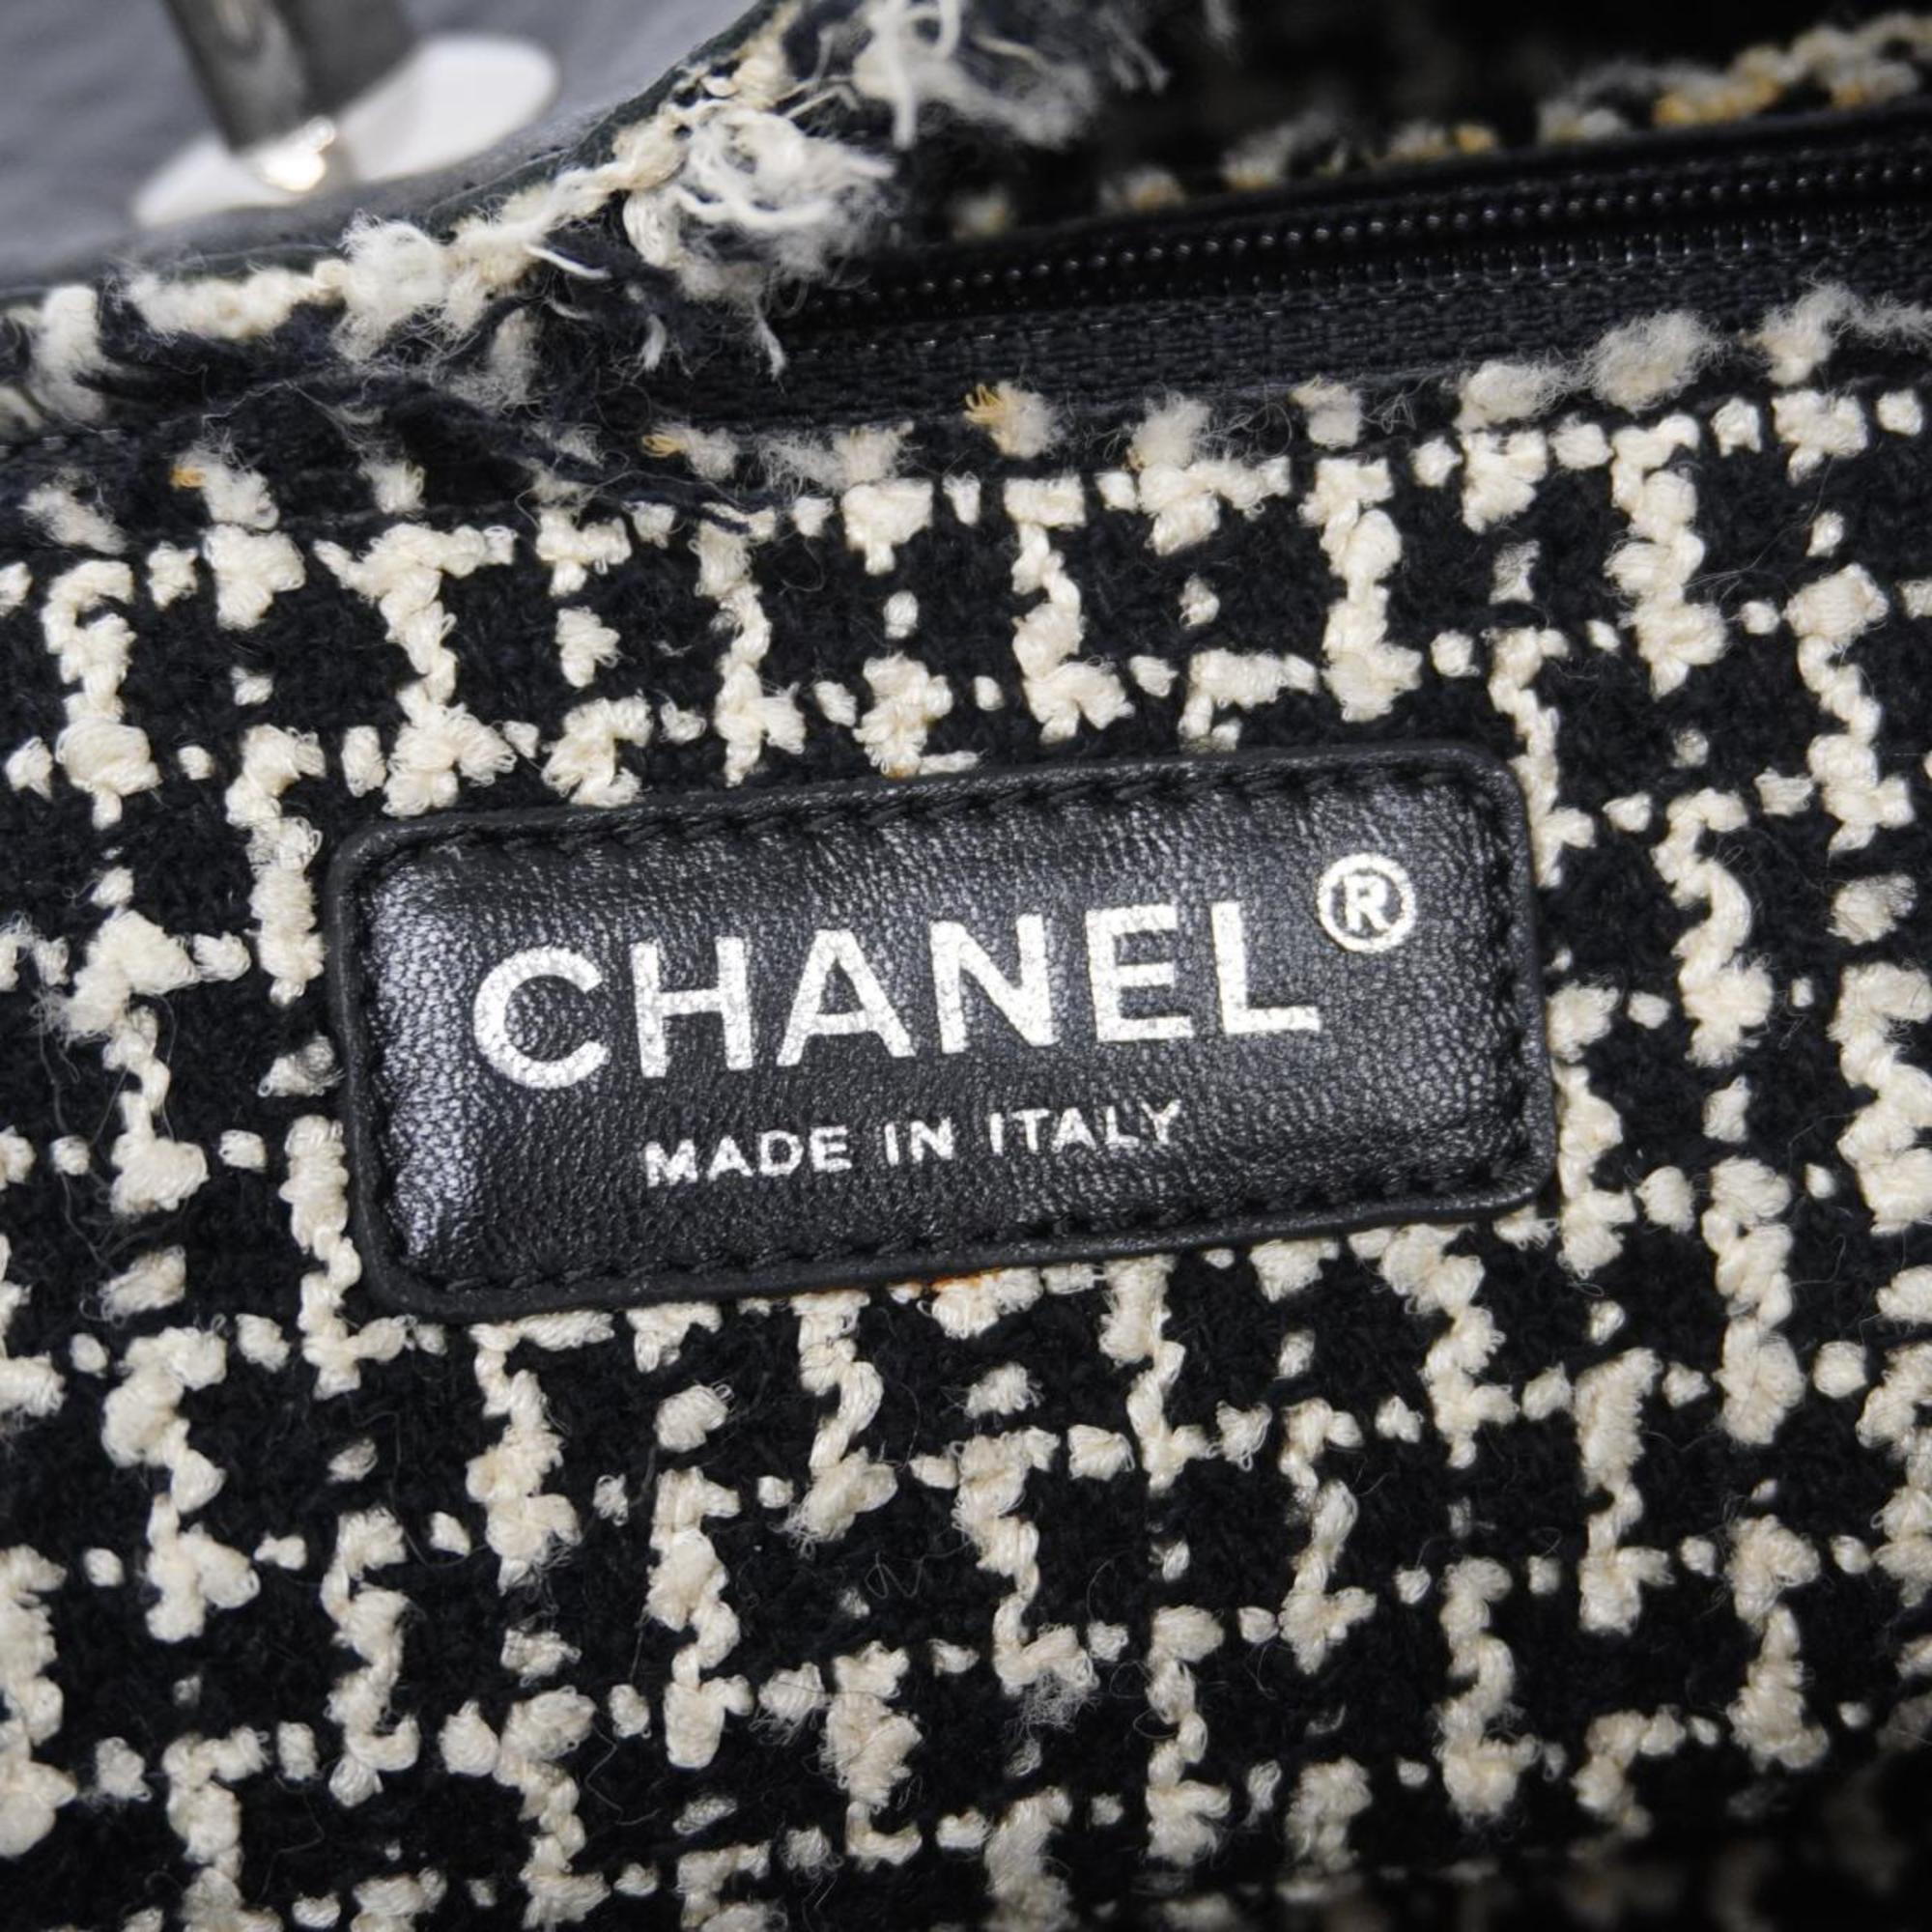 シャネル(Chanel) シャネル トートバッグ レザー ツイード ブラック  レディース